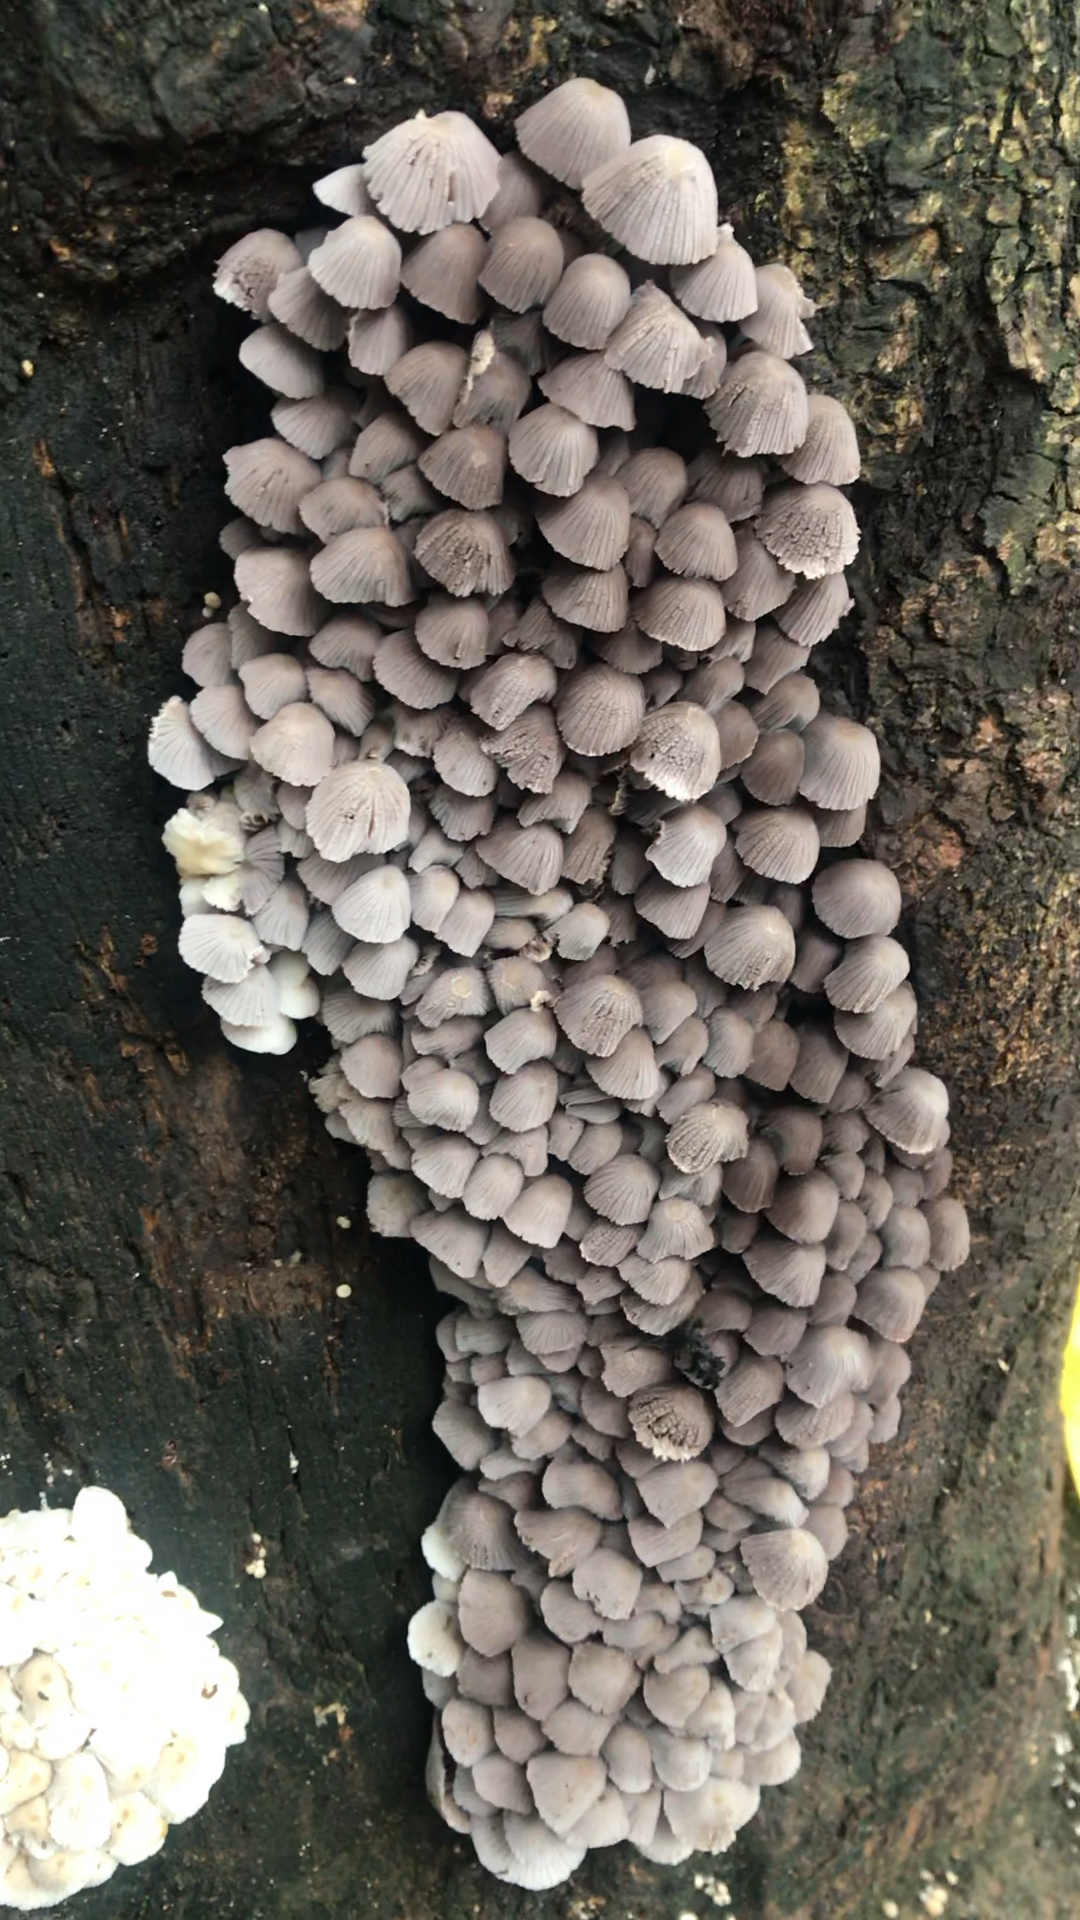 真稀罕,涌边这树上长了这么多野蘑菇